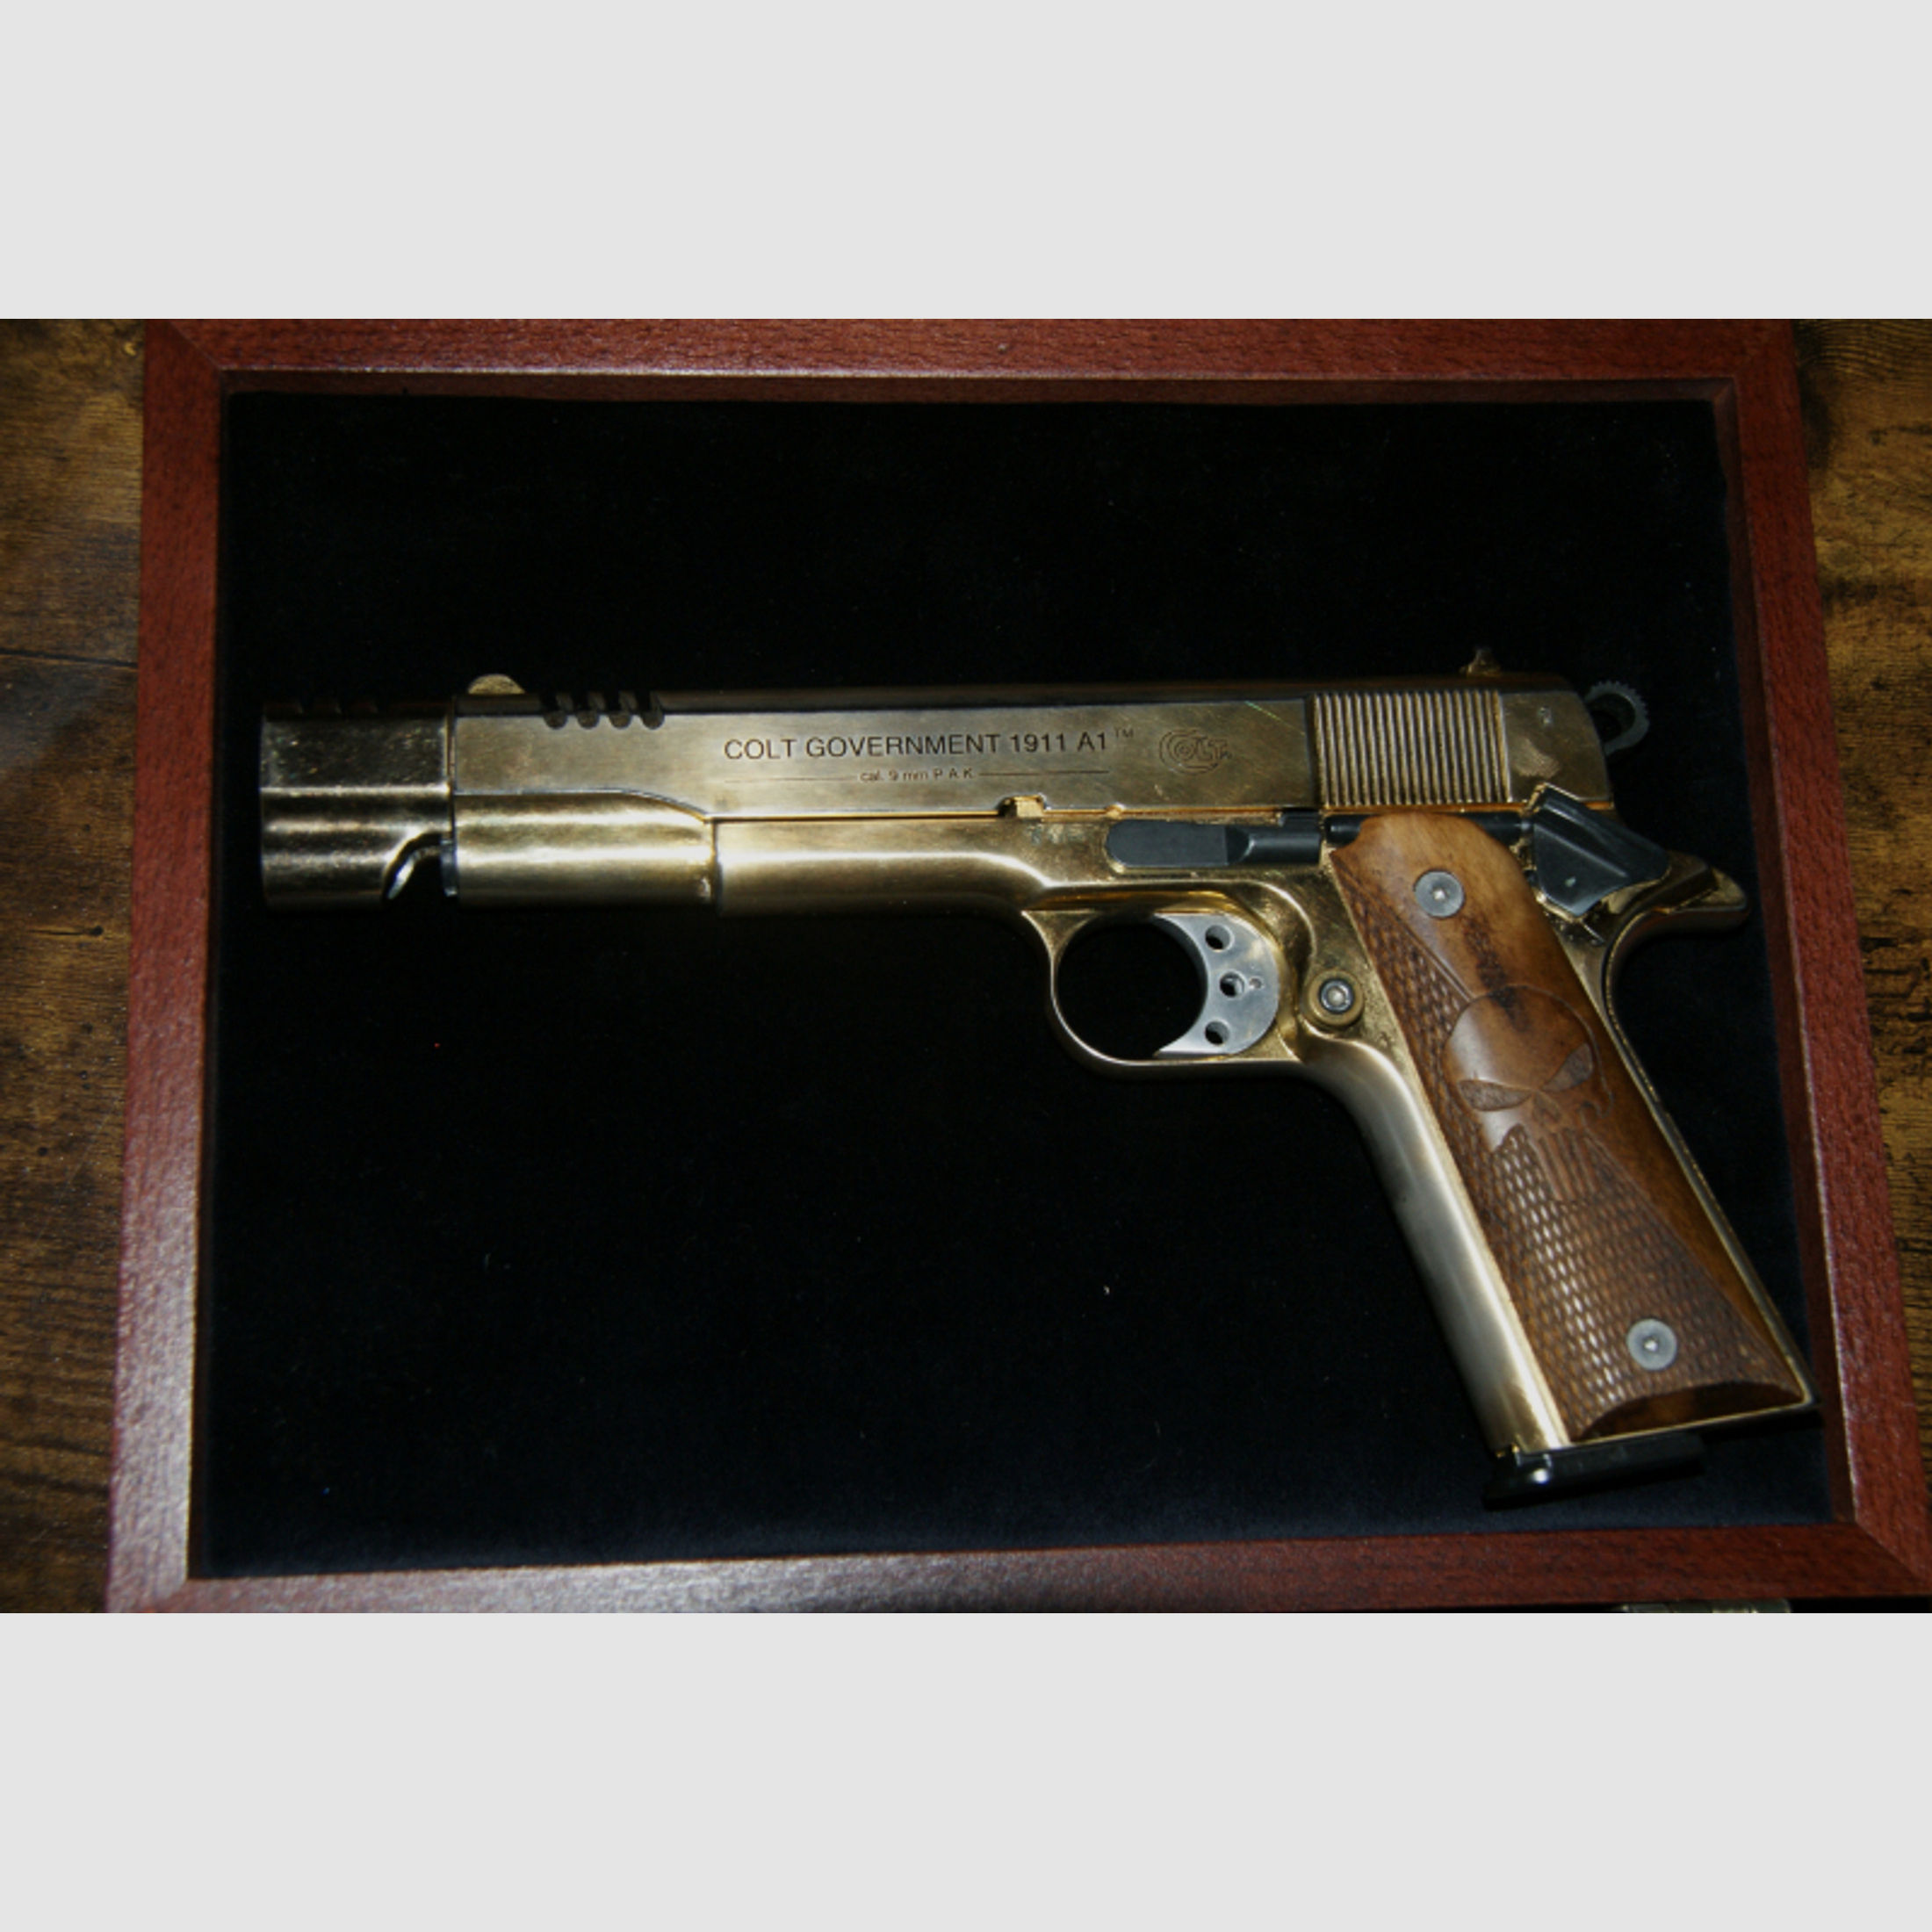 Colt Goverment 1911 A1 Gold